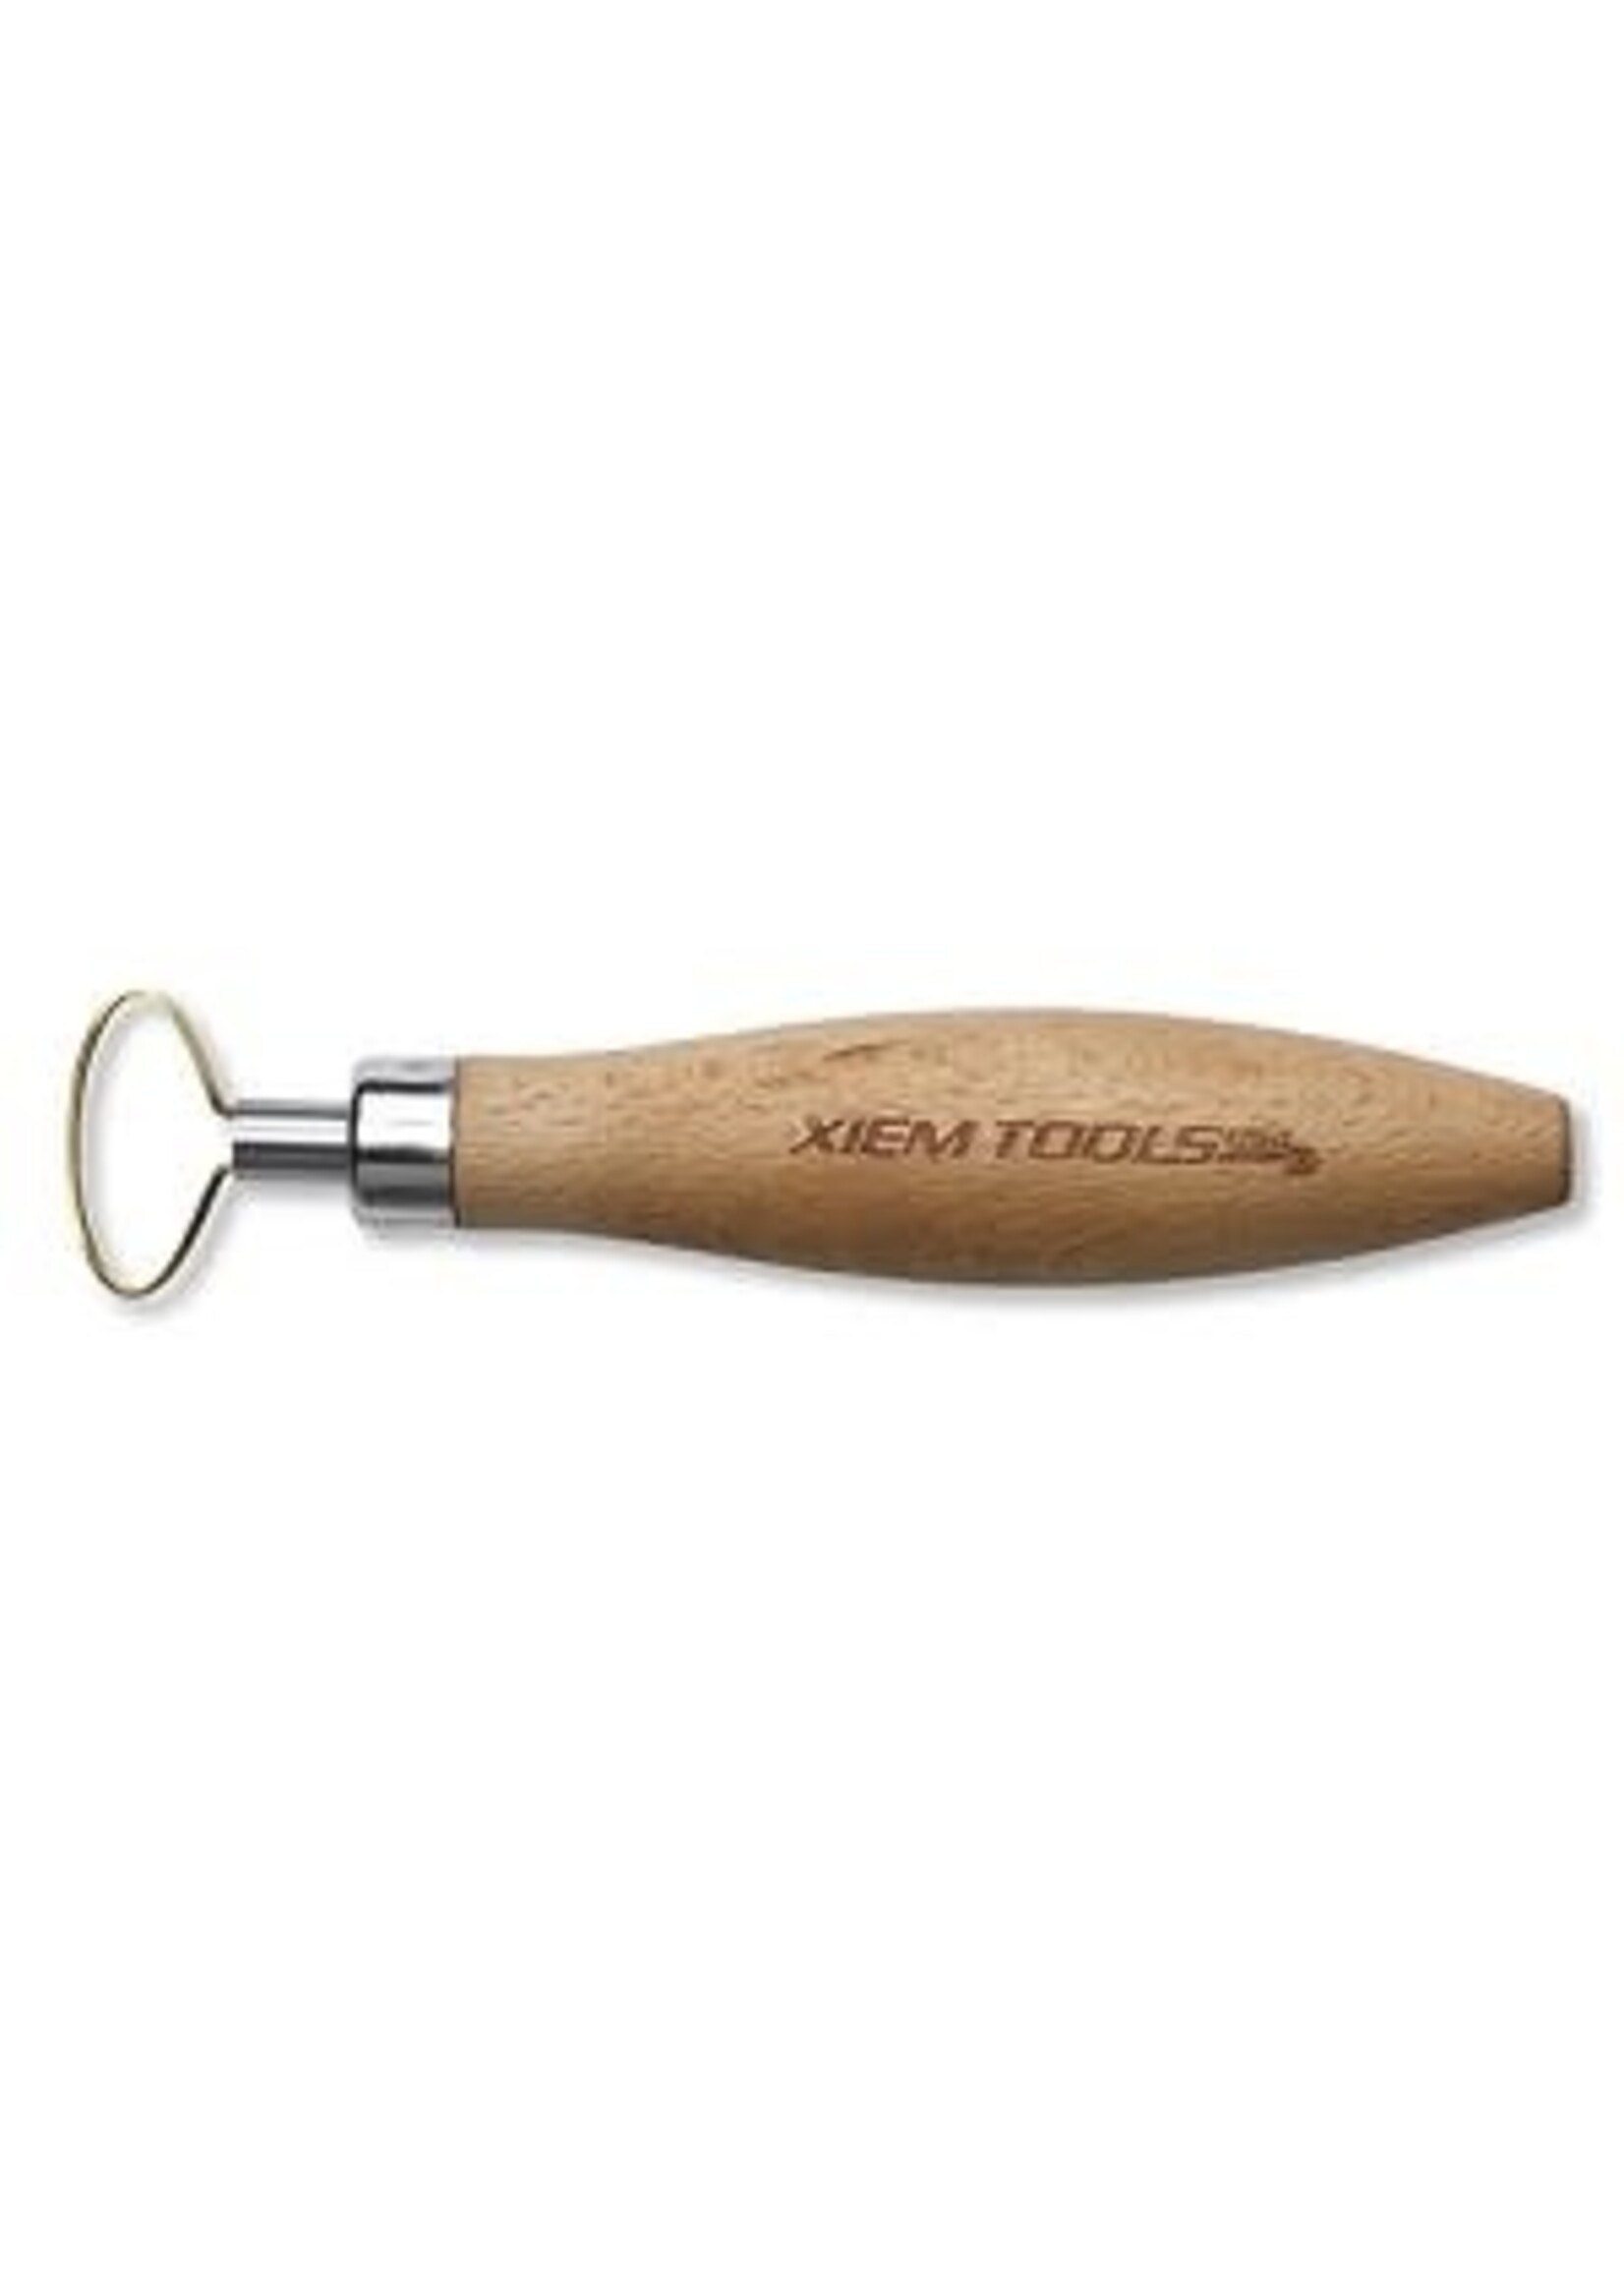 Xiem Titanium-Fused trimming tool Oval Medium